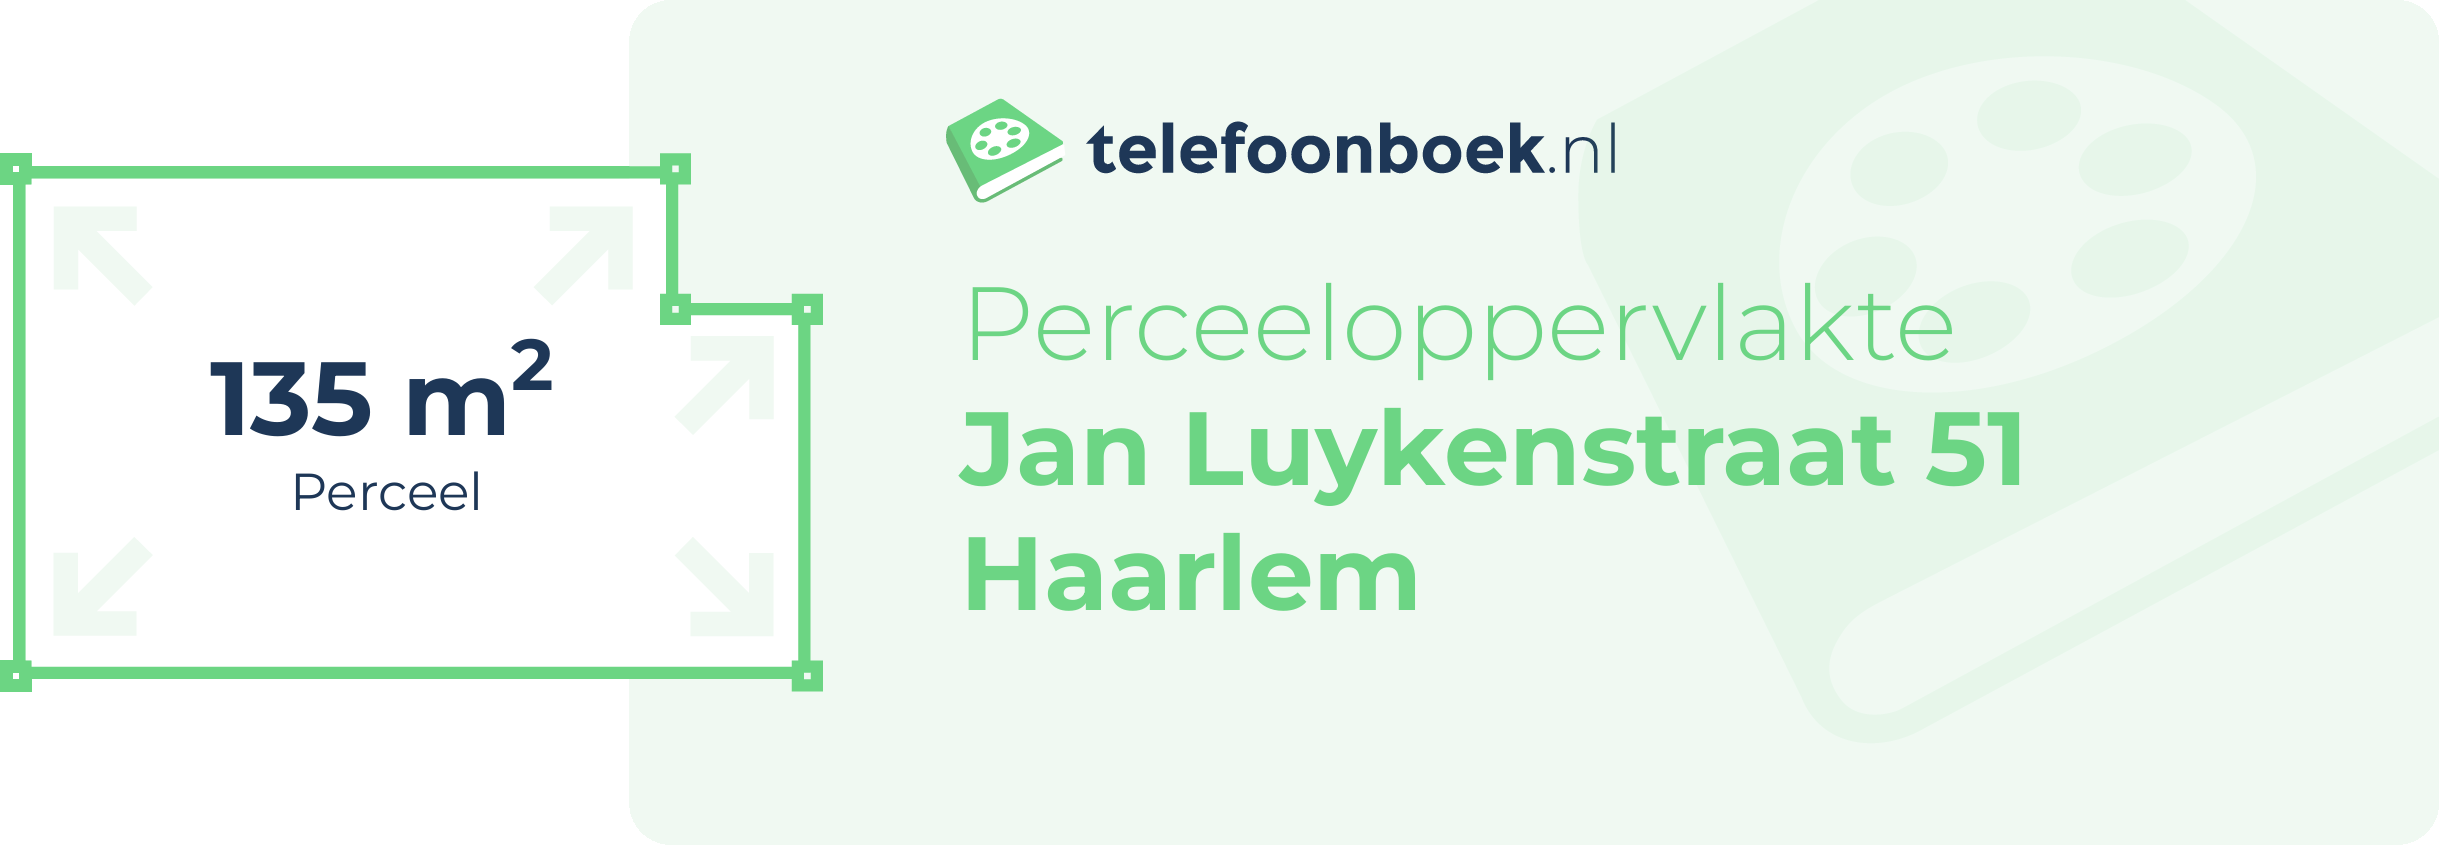 Perceeloppervlakte Jan Luykenstraat 51 Haarlem